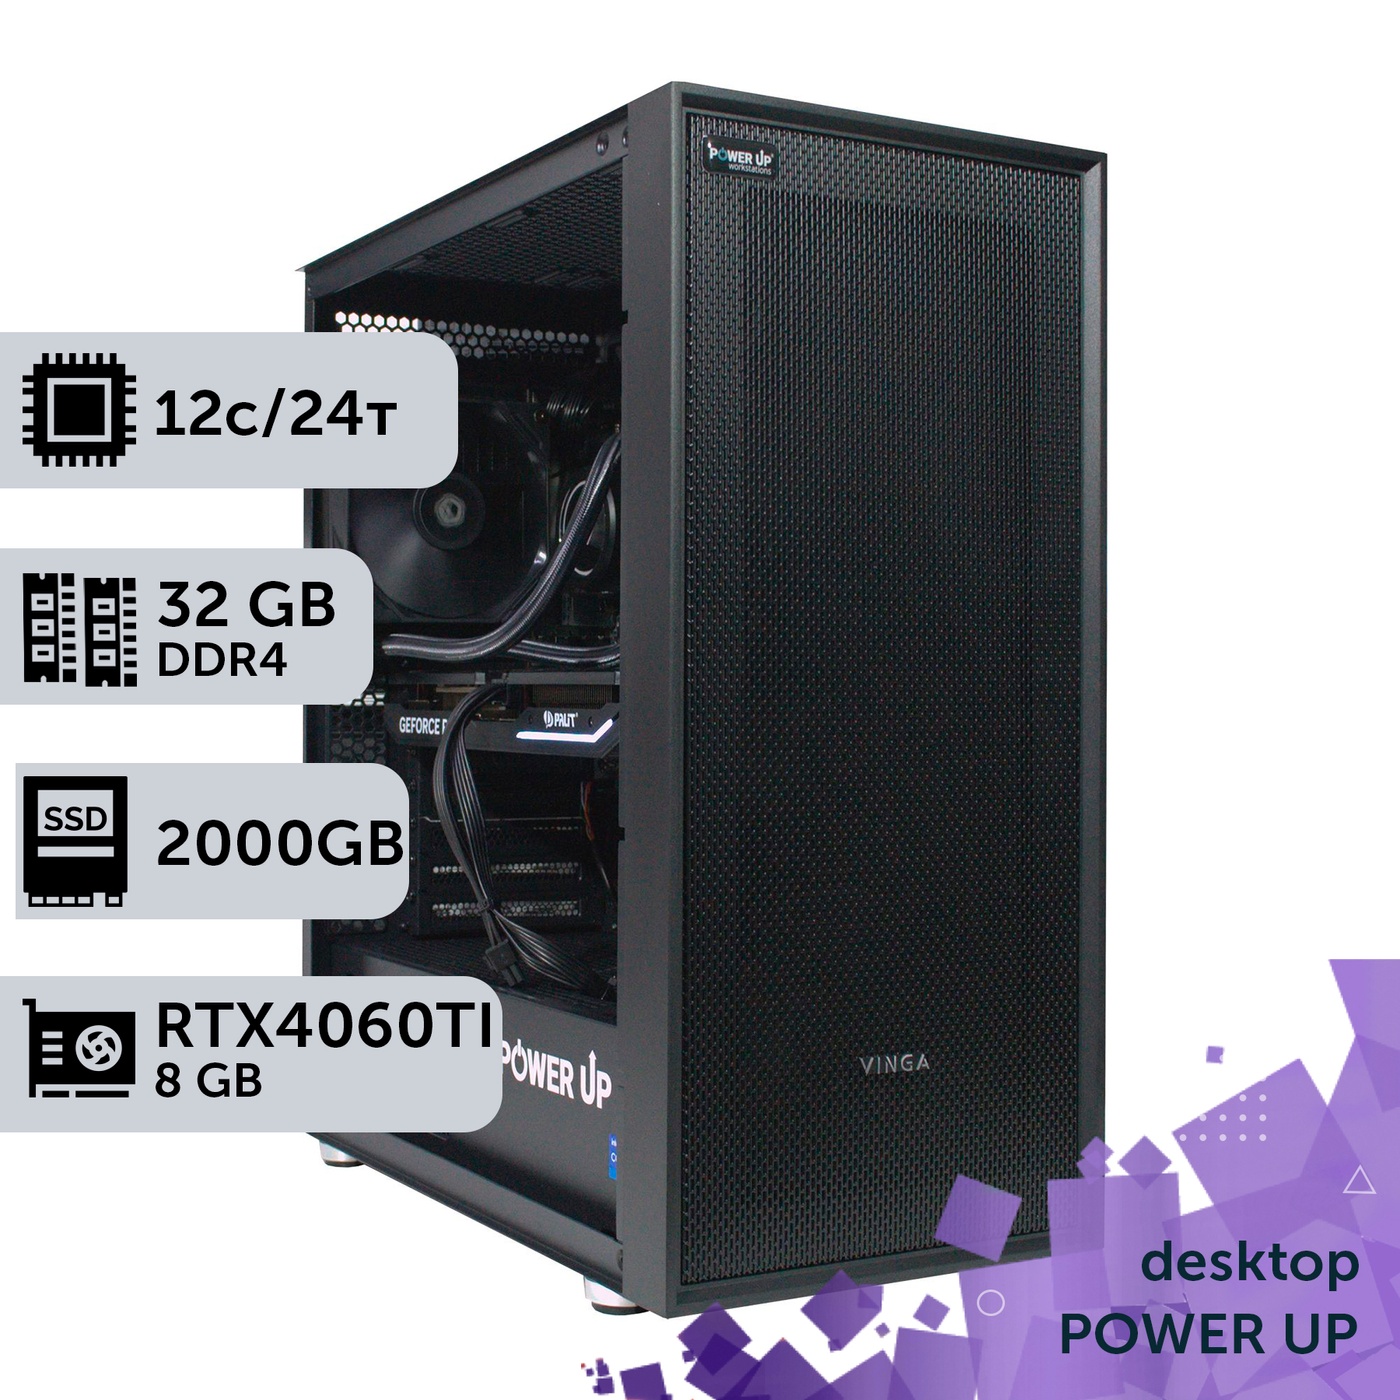 Робоча станція PowerUp Desktop #273 Ryzen 9 5900x/32 GB/SSD 2TB/GeForce RTX 4060Ti 8GB